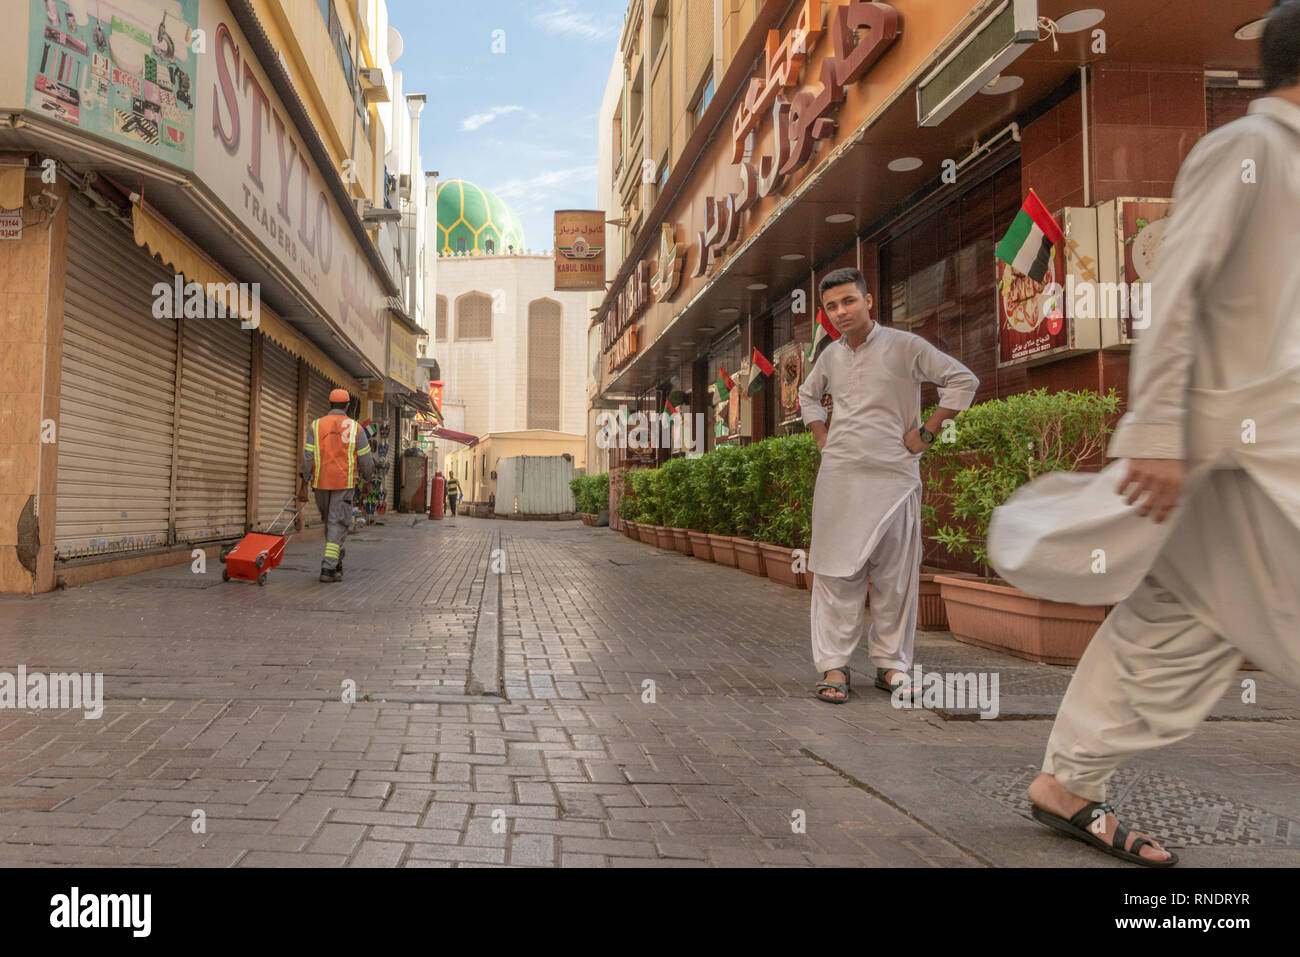 Pakistanische Männer wandern und starrte auf die Kamera in einer ruhigen Straße des beliebten und ethnischen Stadtteil Deira in Dubai, Vereinigte Arabische Emirate, Stockfoto